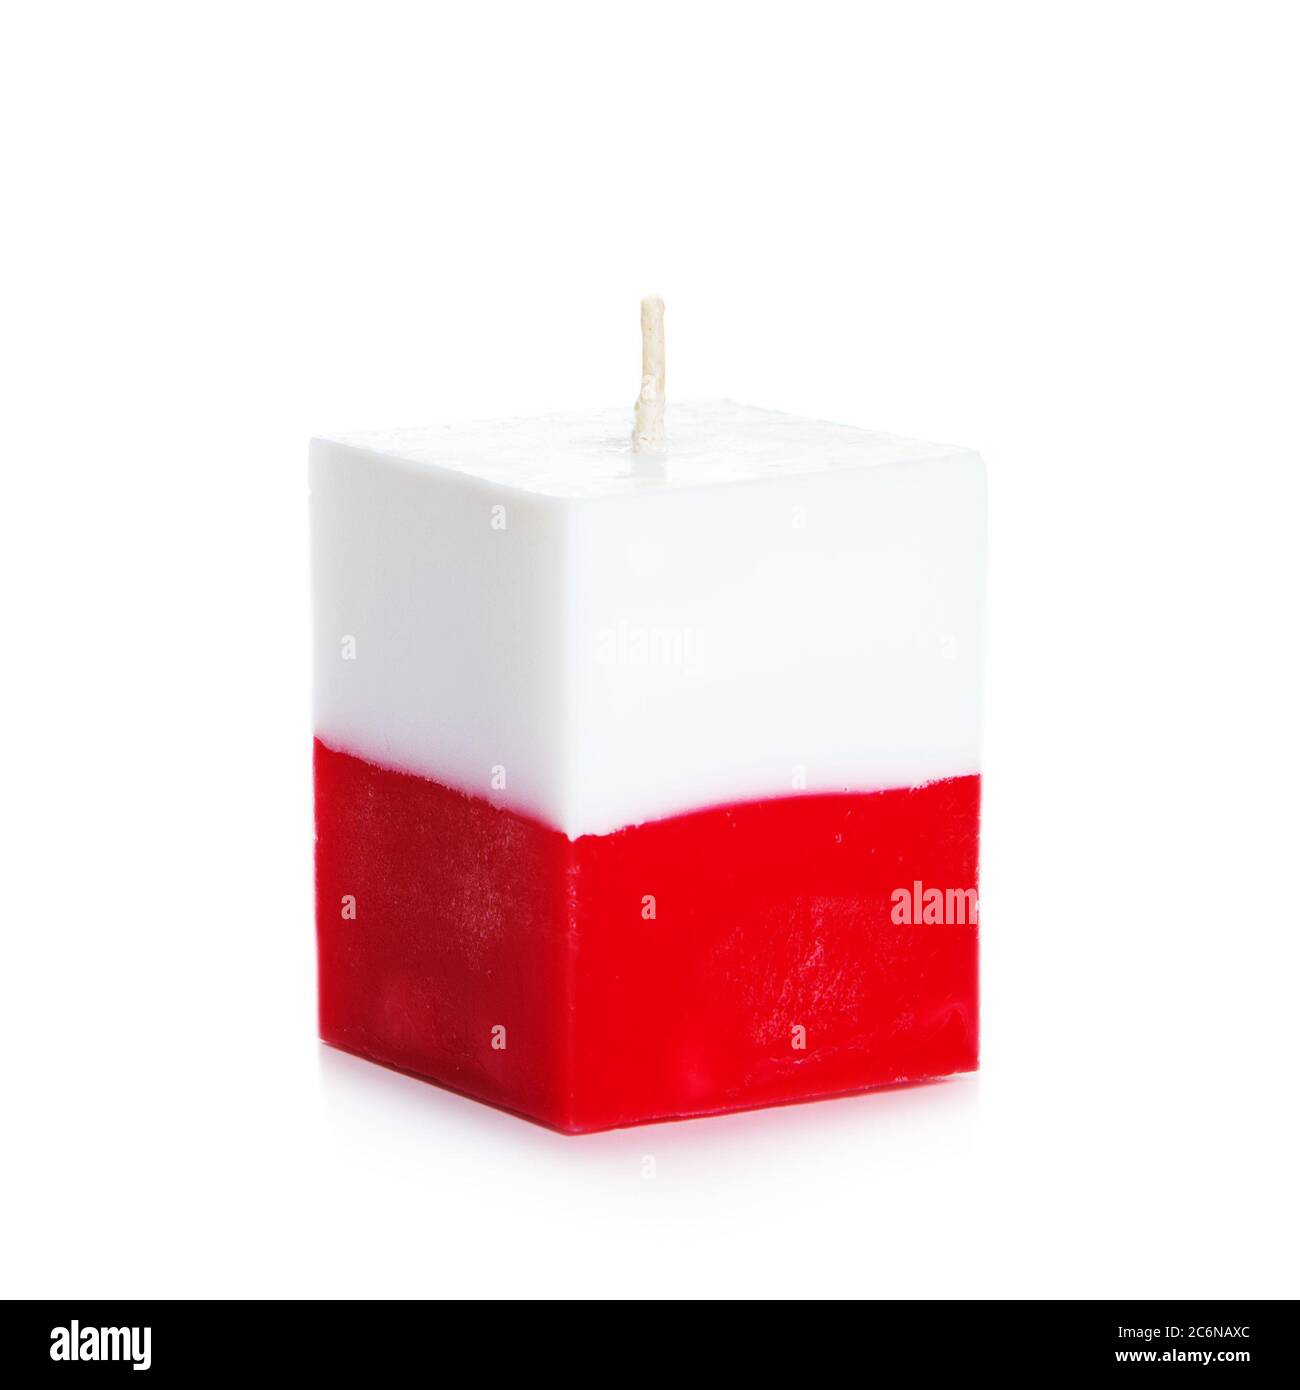 Dekorative handgemachte Kerze isoliert auf weißem Hintergrund.  Würfelförmige Erinnerungskerze als polnische Staatsflagge und Landsymbol.  Rechteckige Würfel-Blöcke Stockfotografie - Alamy